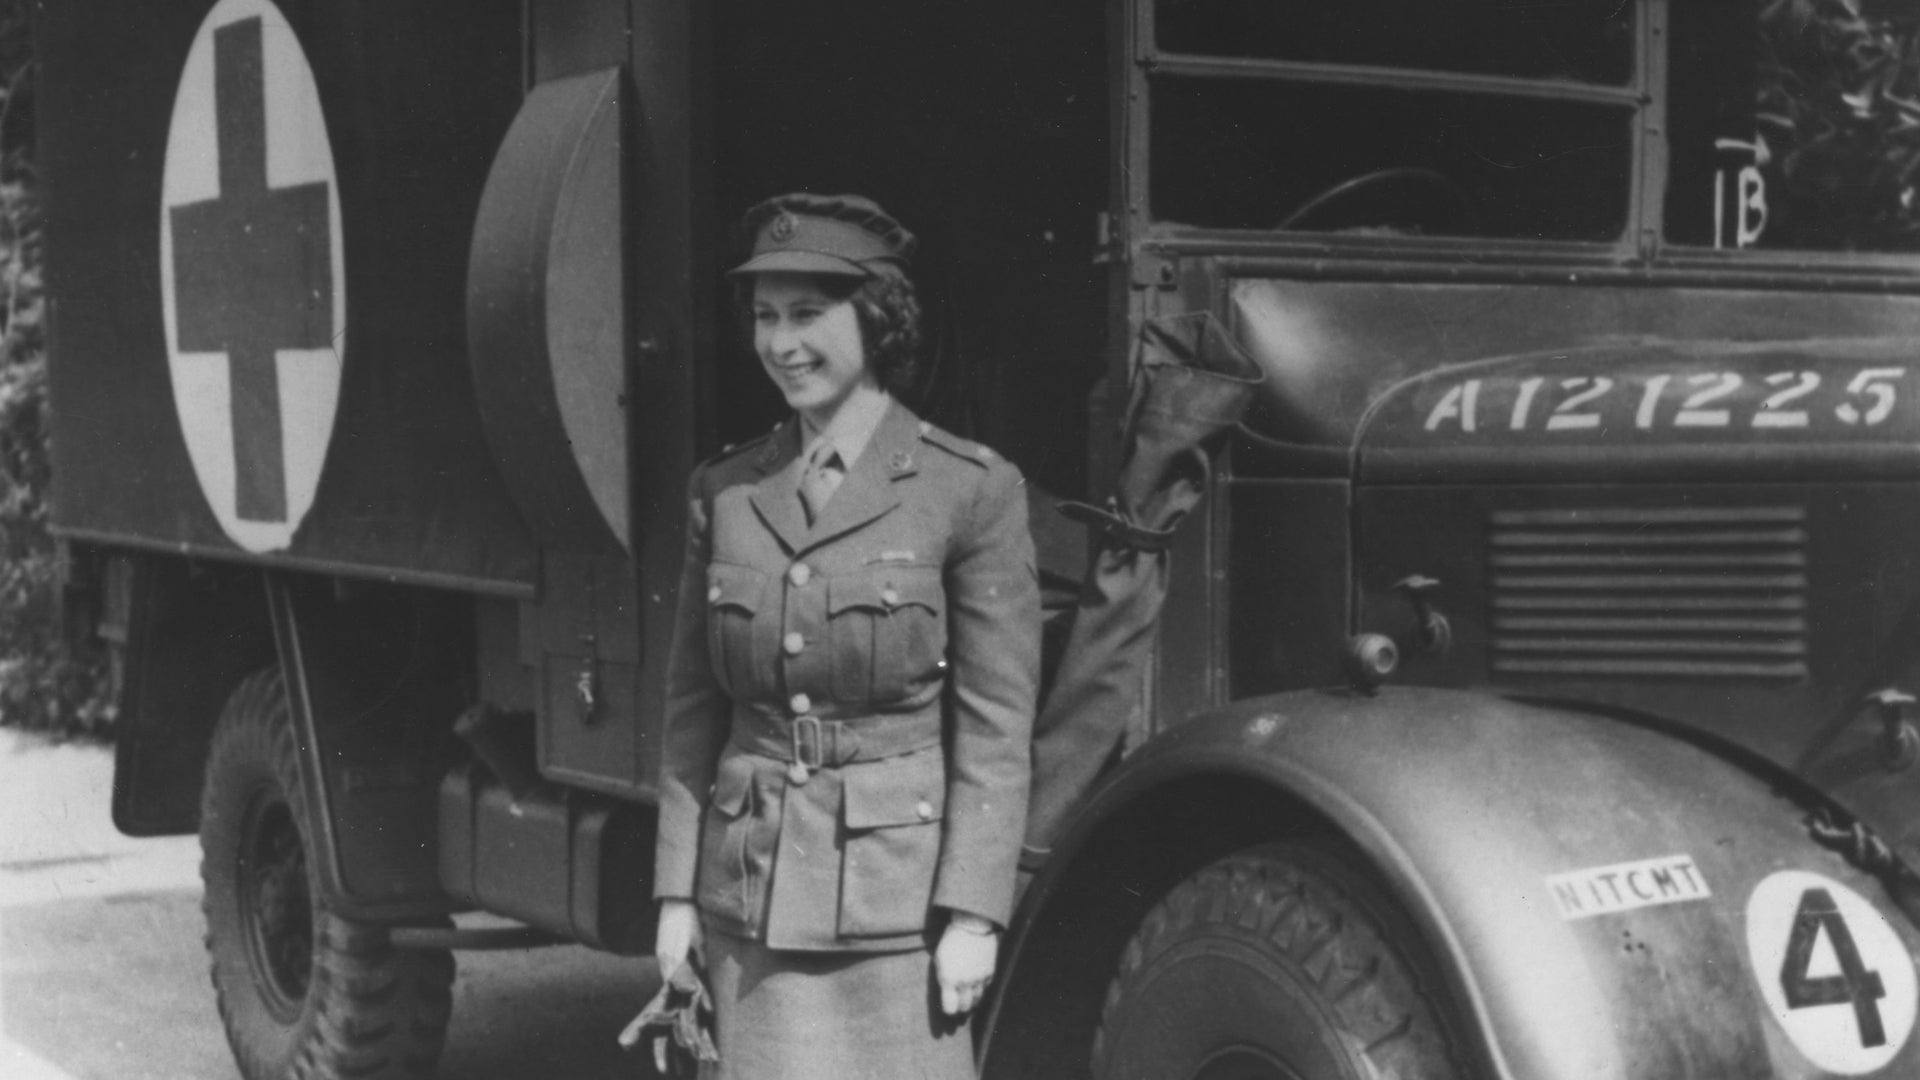 Here is Queen Elizabeth’s World War II service history